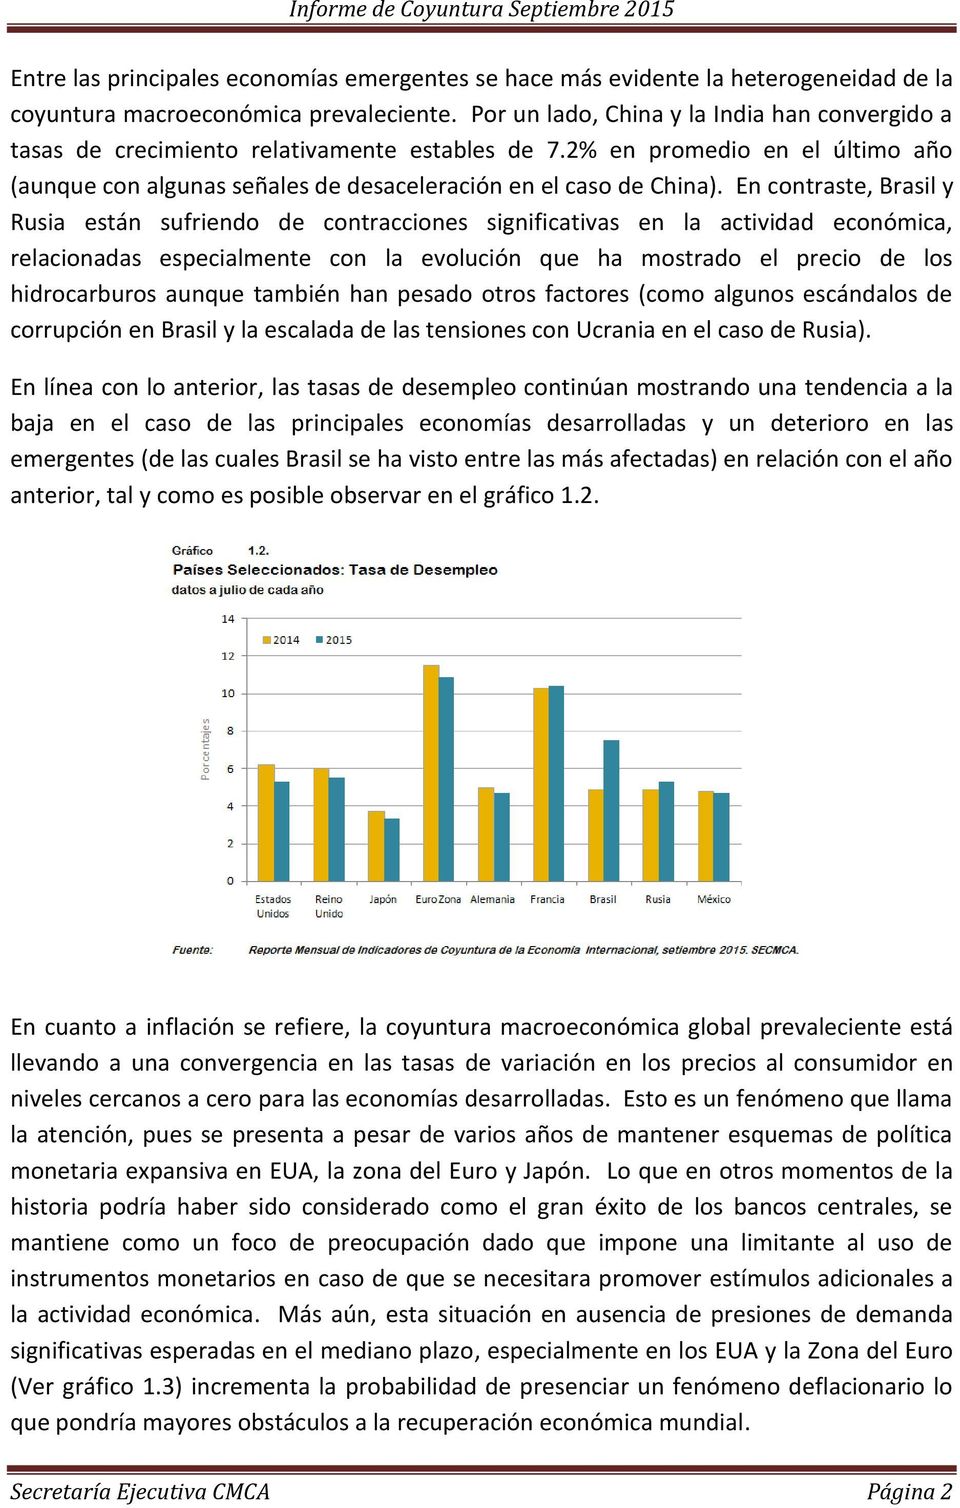 En contraste, Brasil y Rusia están sufriendo de contracciones significativas en la actividad económica, relacionadas especialmente con la evolución que ha mostrado el precio de los hidrocarburos